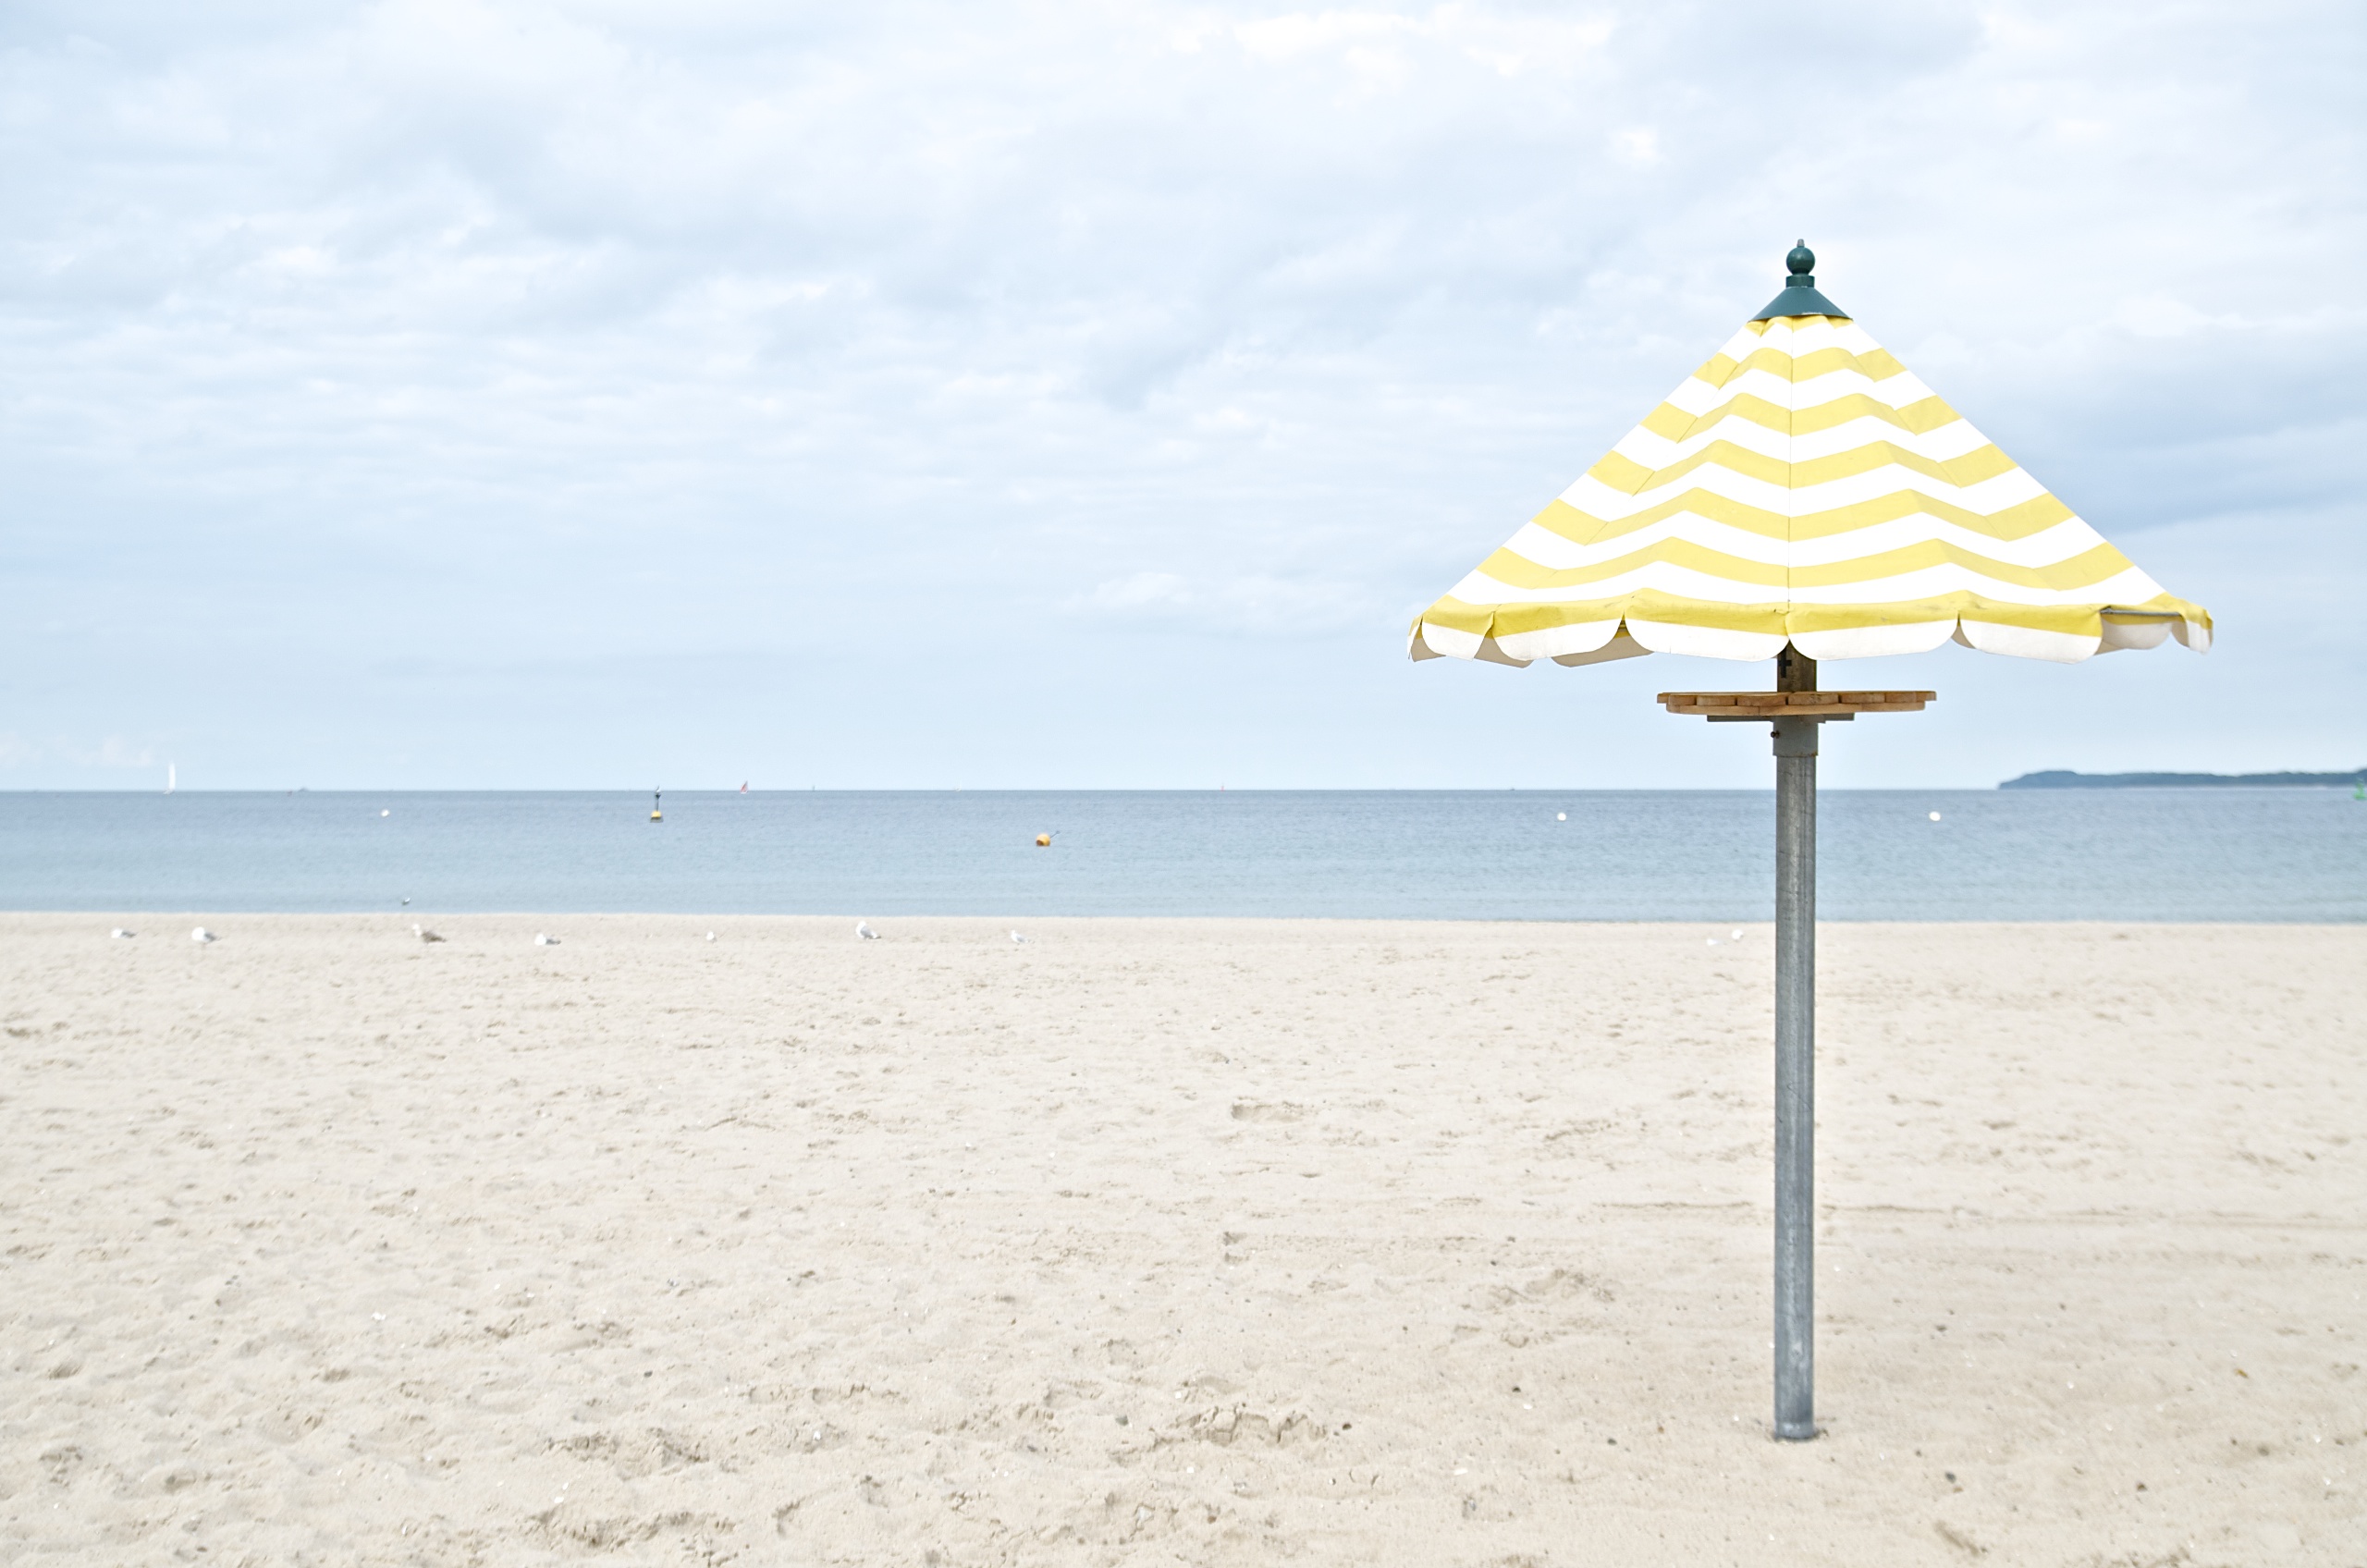 (K)Ein Tag am Meer,gelb-weiß gestreifter Sonnenschirm am Strand in Travemünde, Himmel, Meer